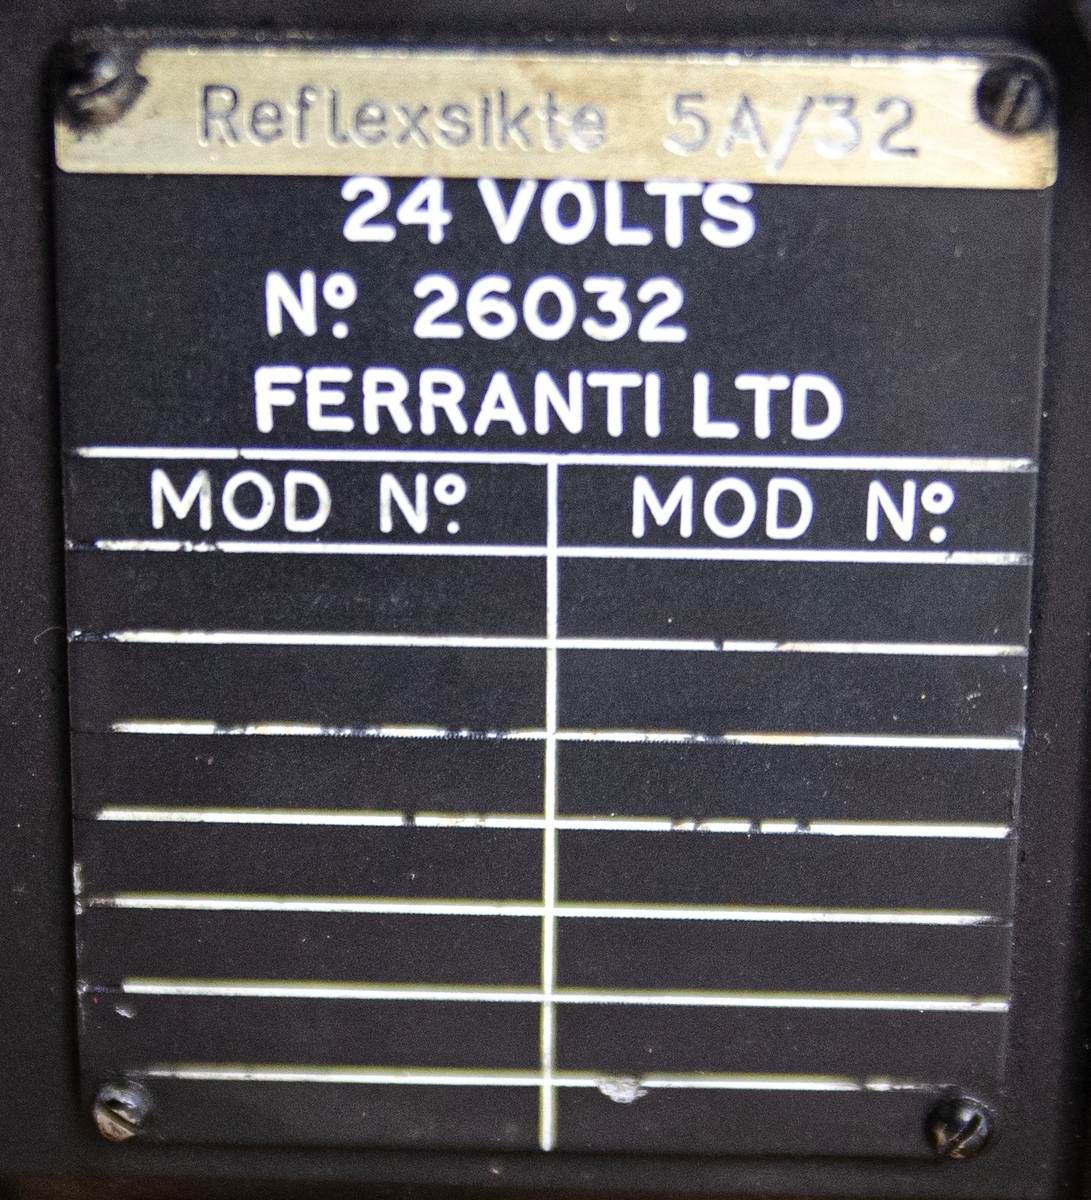 Reflexsikte 5A/32, tillhörandes flygplan A 32 & J 34. 24 volts. Monterad på en träplatta. Dubbelförvarad i två rundade originallådor av trä, tillverkad av Ferranti LTD. Till föremålet hör ett kontroll- och följekort.